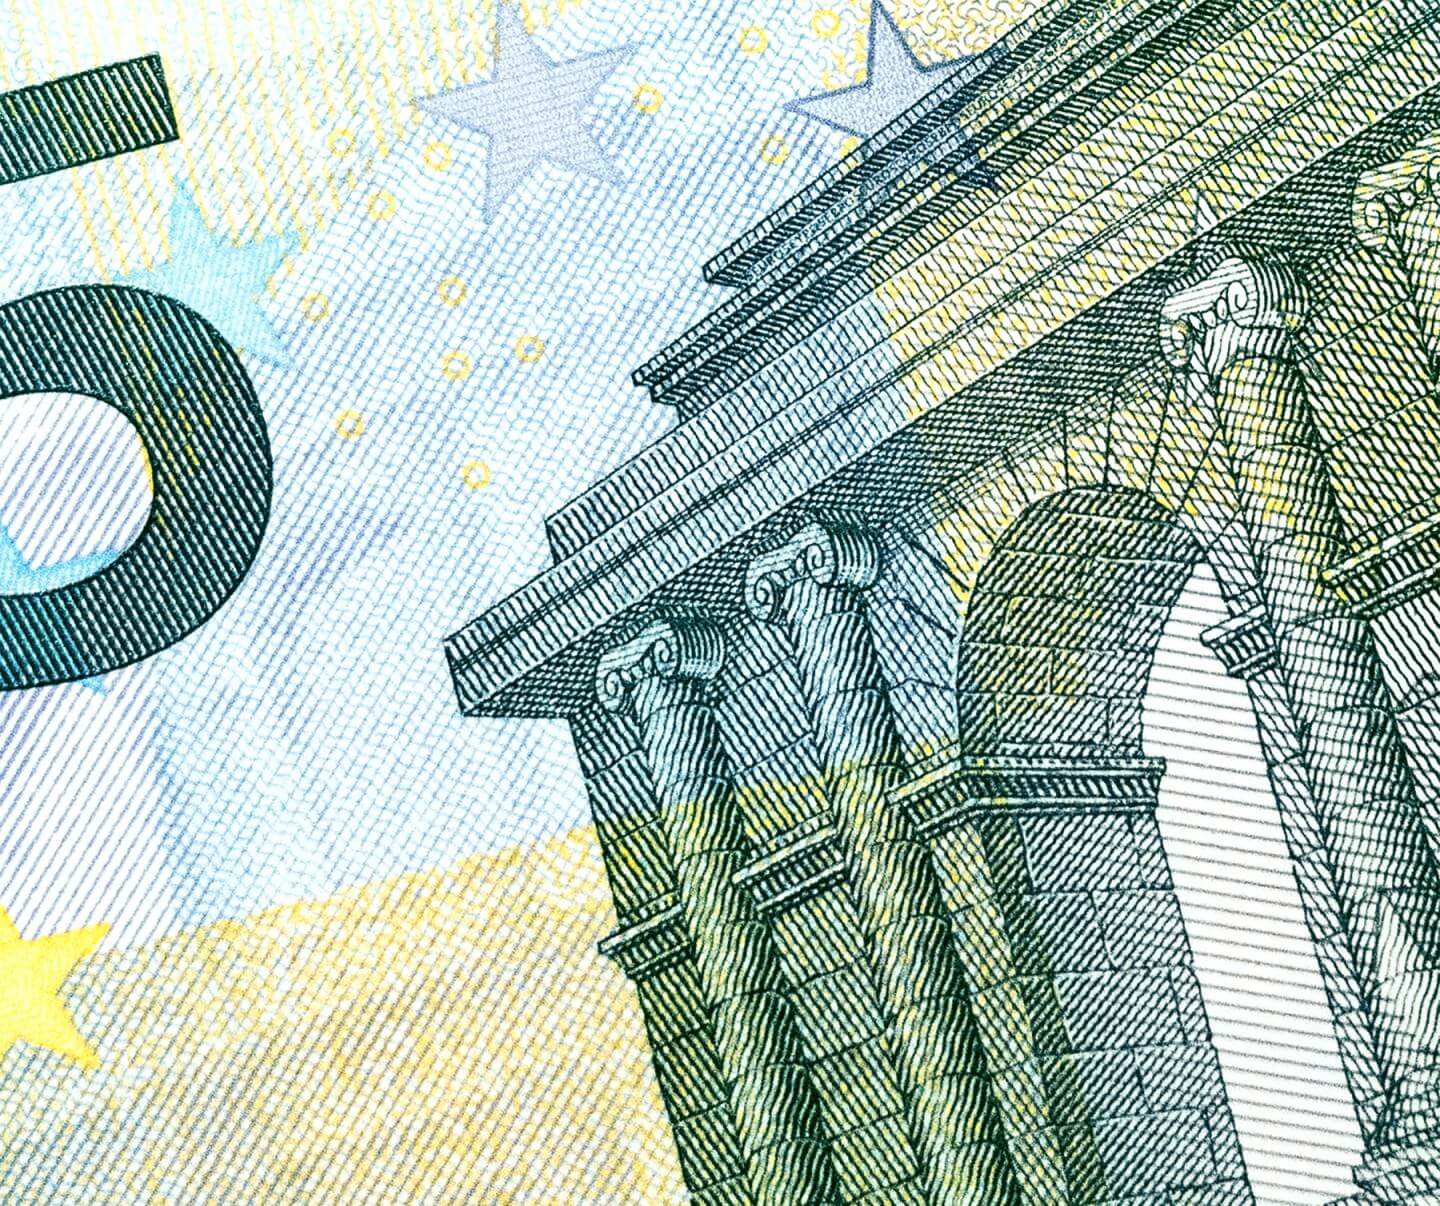 Euro - Too Big to Fail